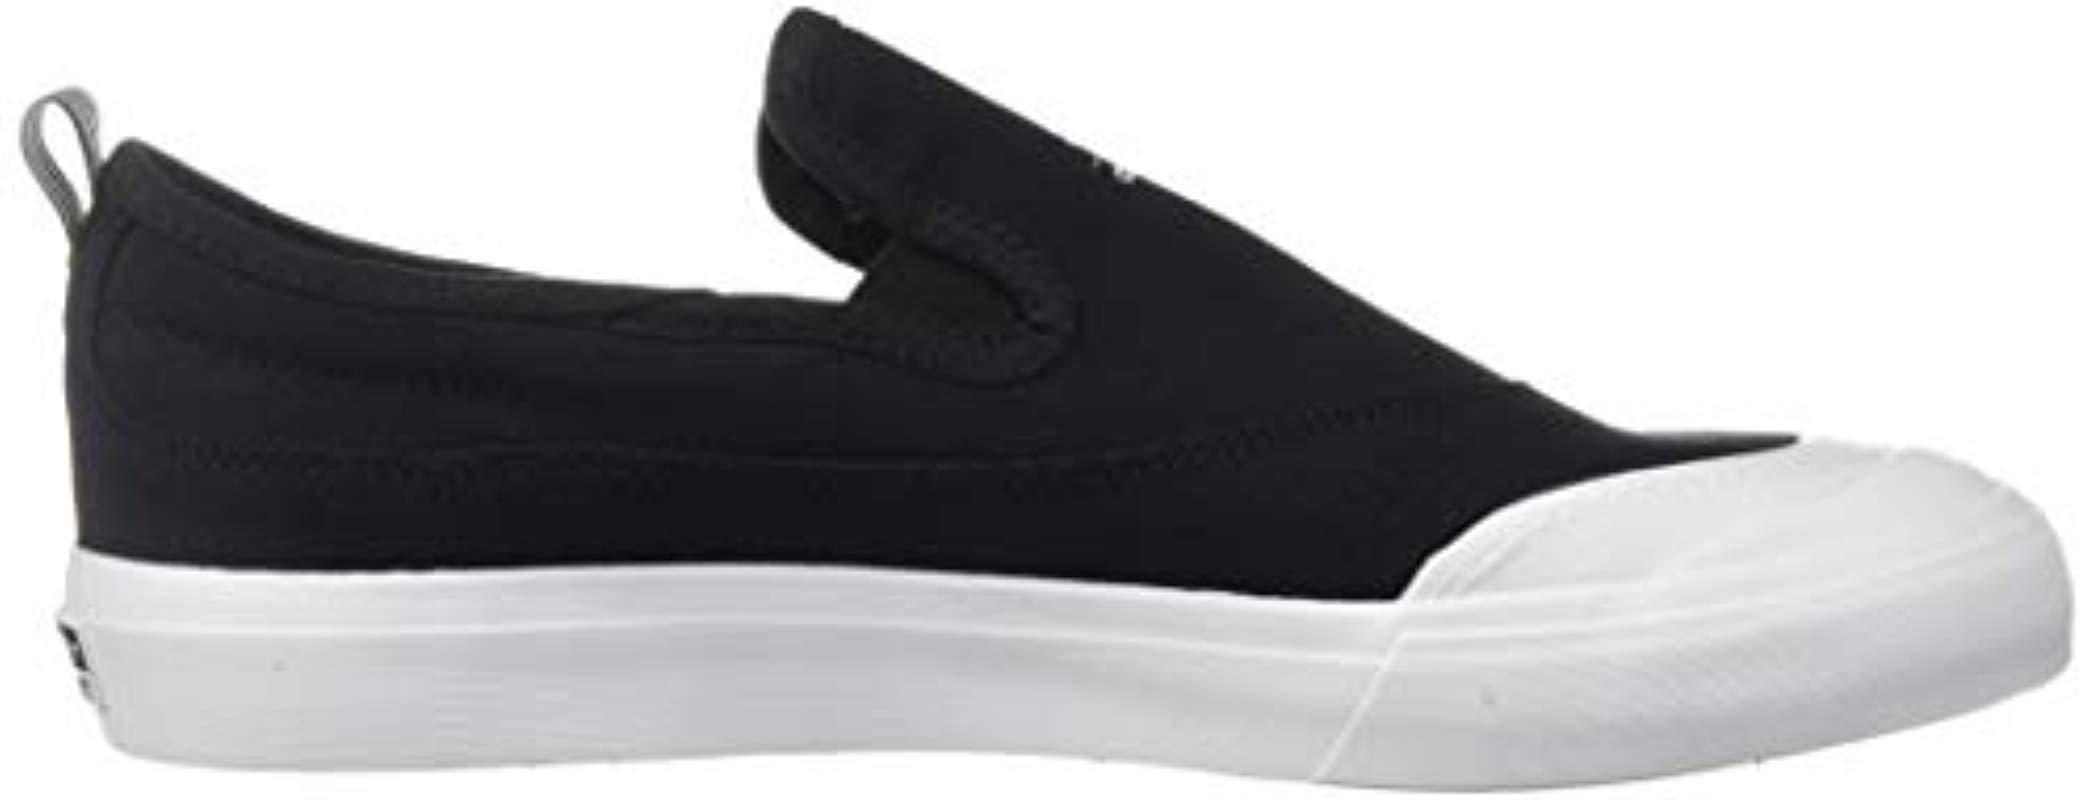 adidas Originals Matchcourt Slip Running Shoe in Black/Black/White (Black)  for Men - Lyst